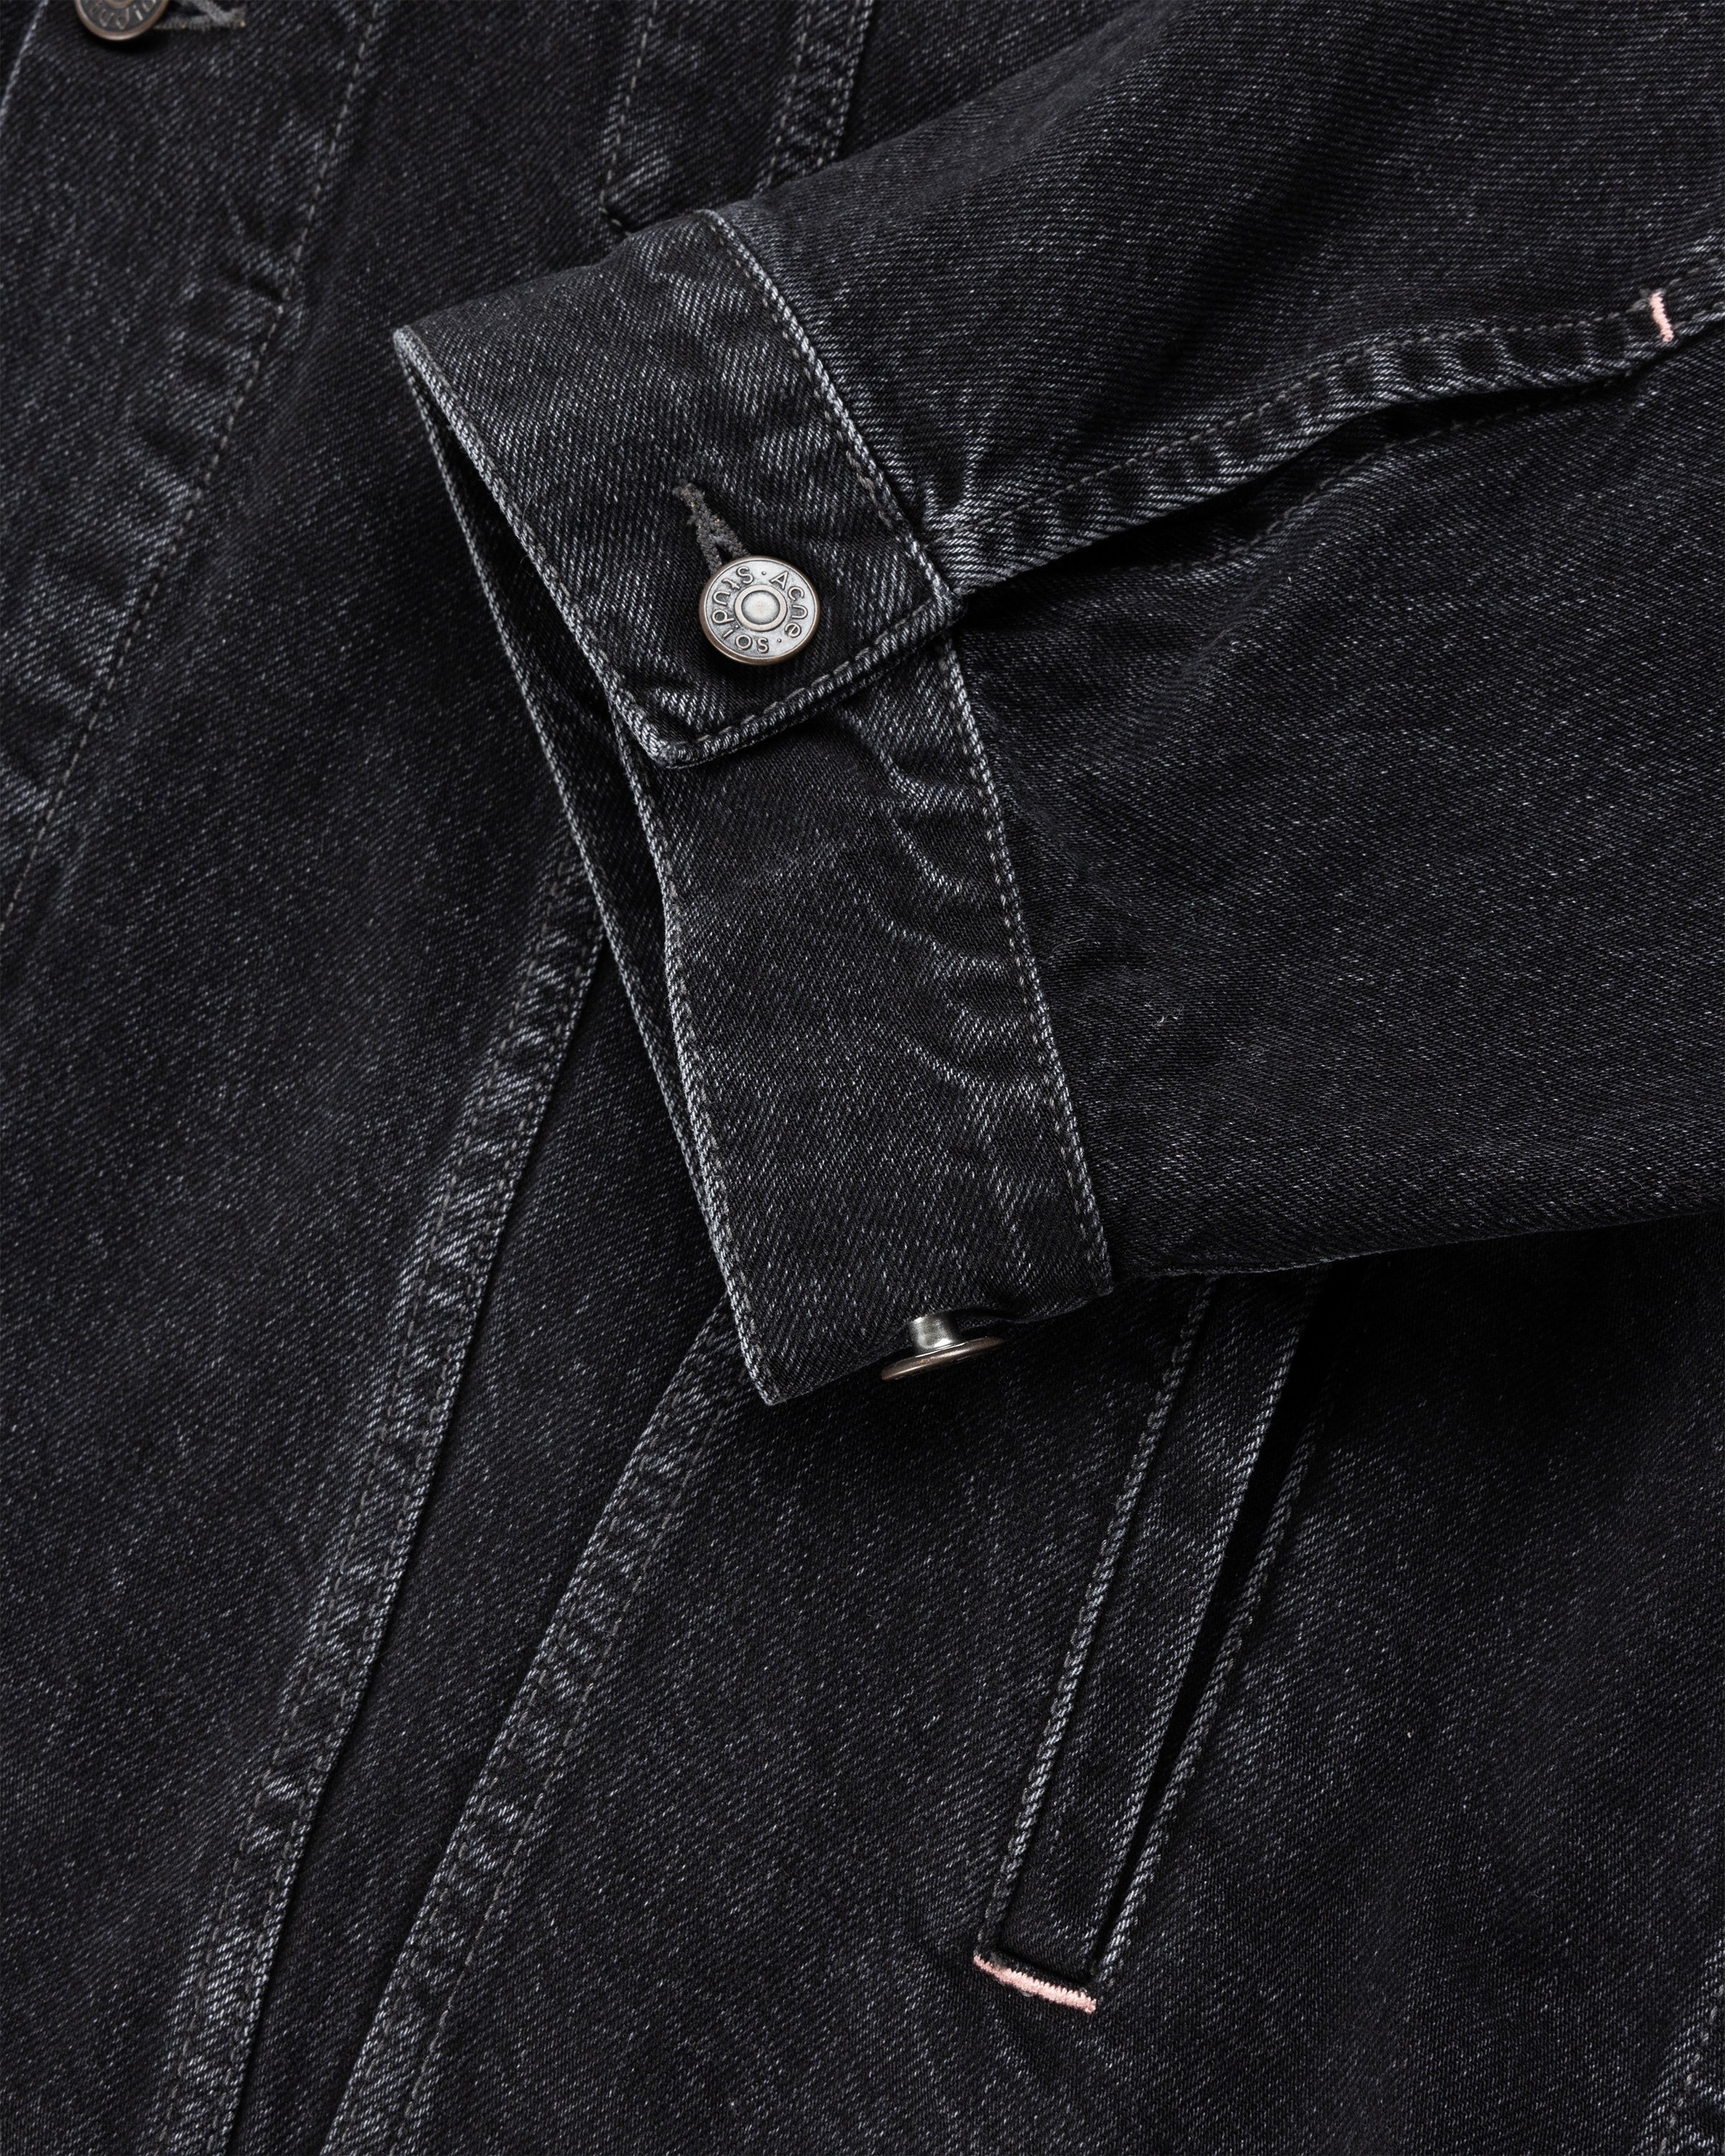 Acne Studios - Oversized Denim Jacket Black - Clothing - Black - Image 7